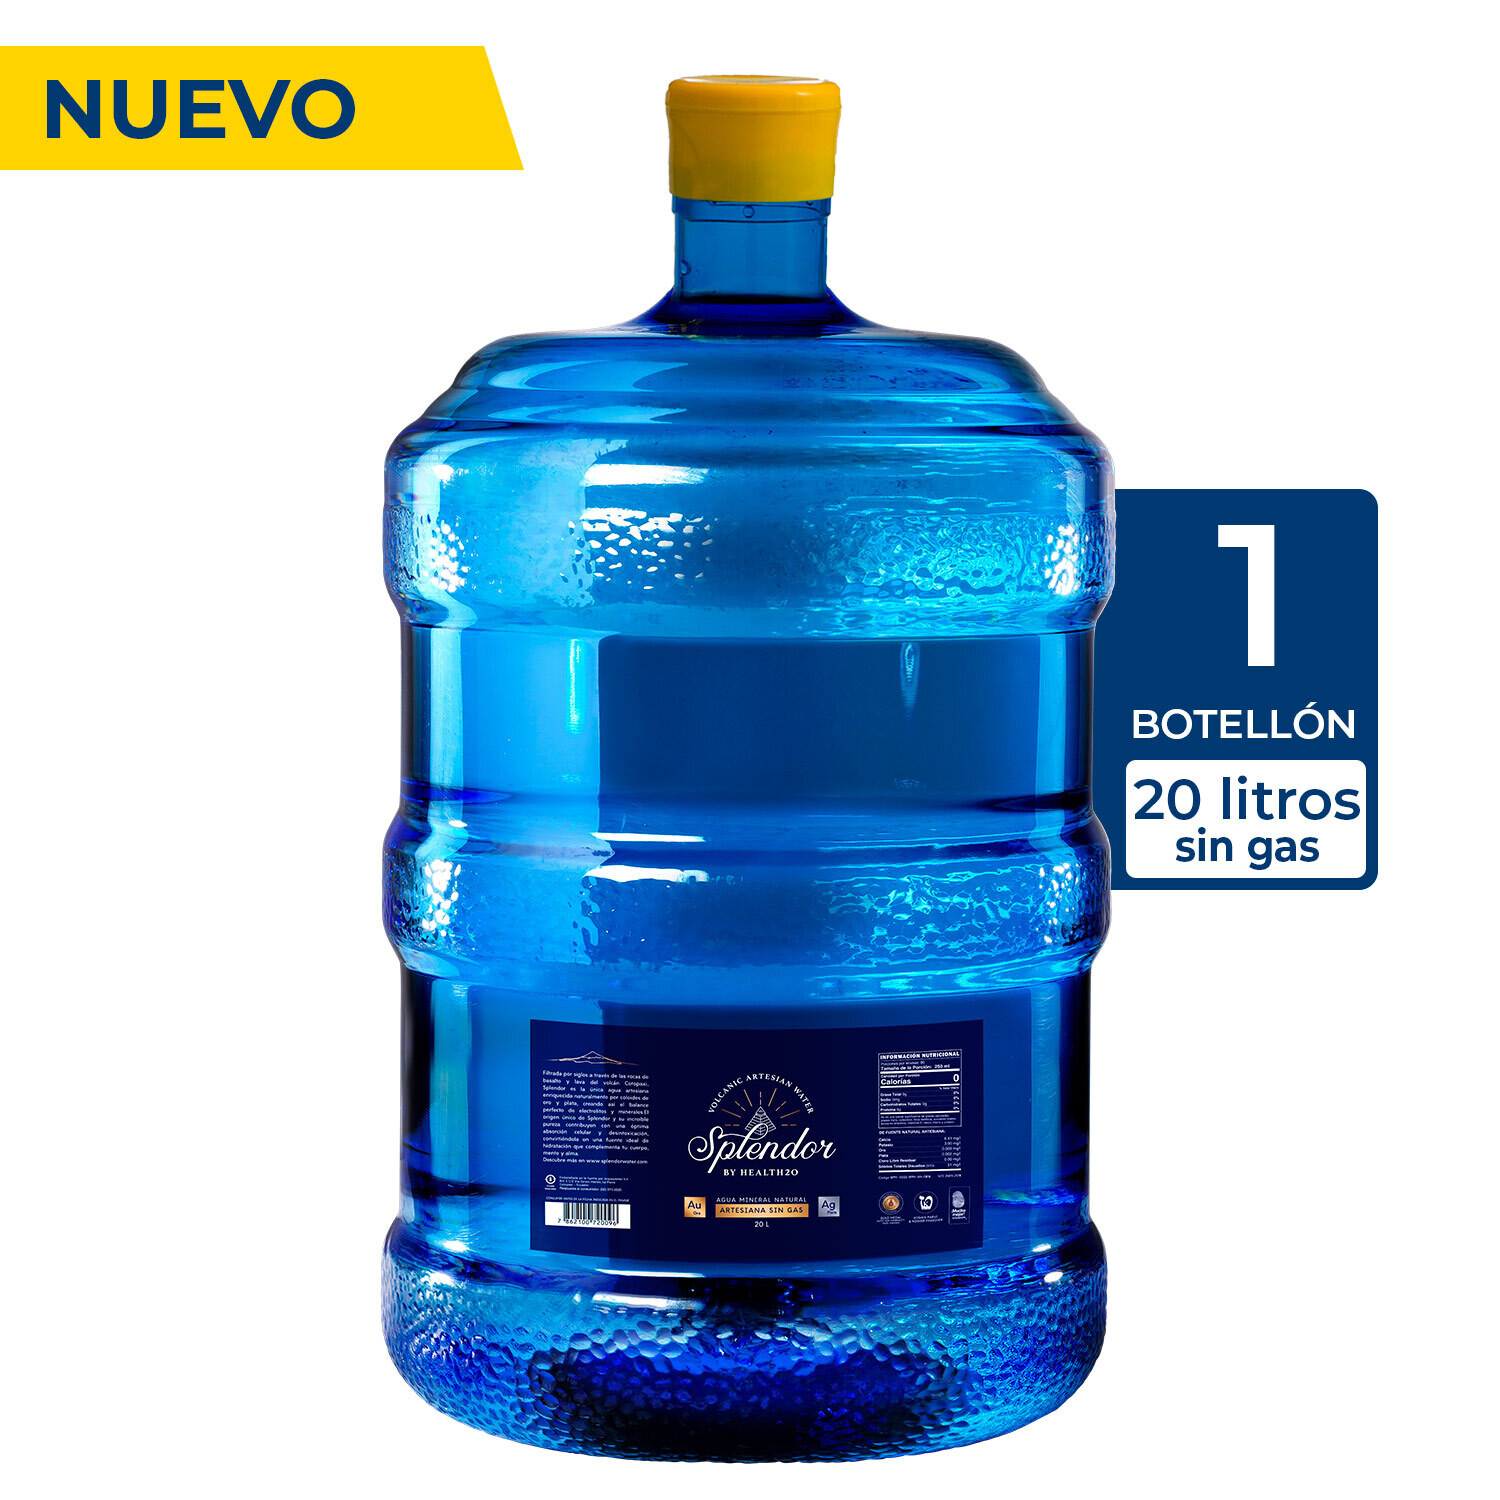 Botellón Agua Splendor Nuevo de 20 Litros (incluye líquido)